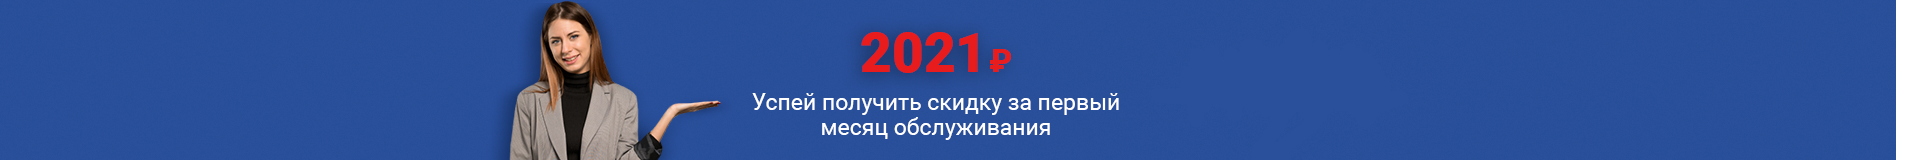 Успей получить скидку за первый месяц обслуживания: 2021 рублей всплывающие окна сменяют друг друга через 5 секунд